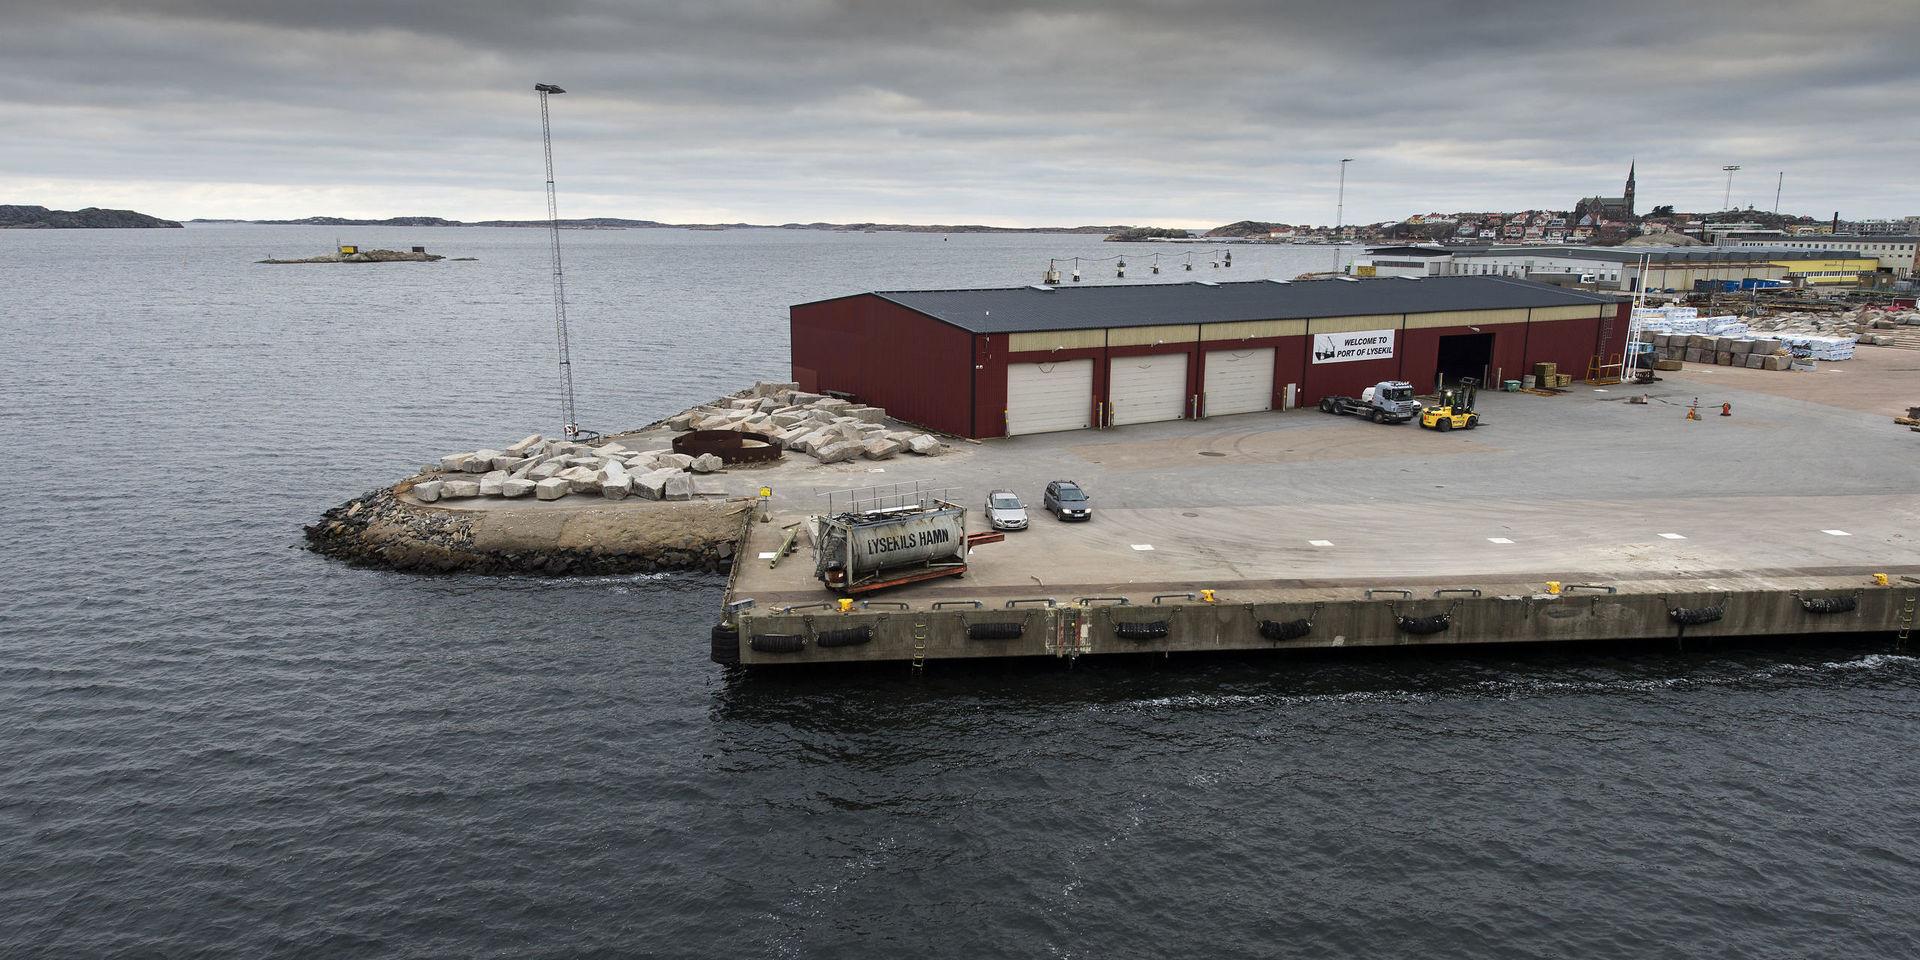 Delar av Lysekils hamn kan komma att privatiseras. Det förslag som tagits fram gäller bland annat Grötö rev där en hel del gods lossas och lastas.